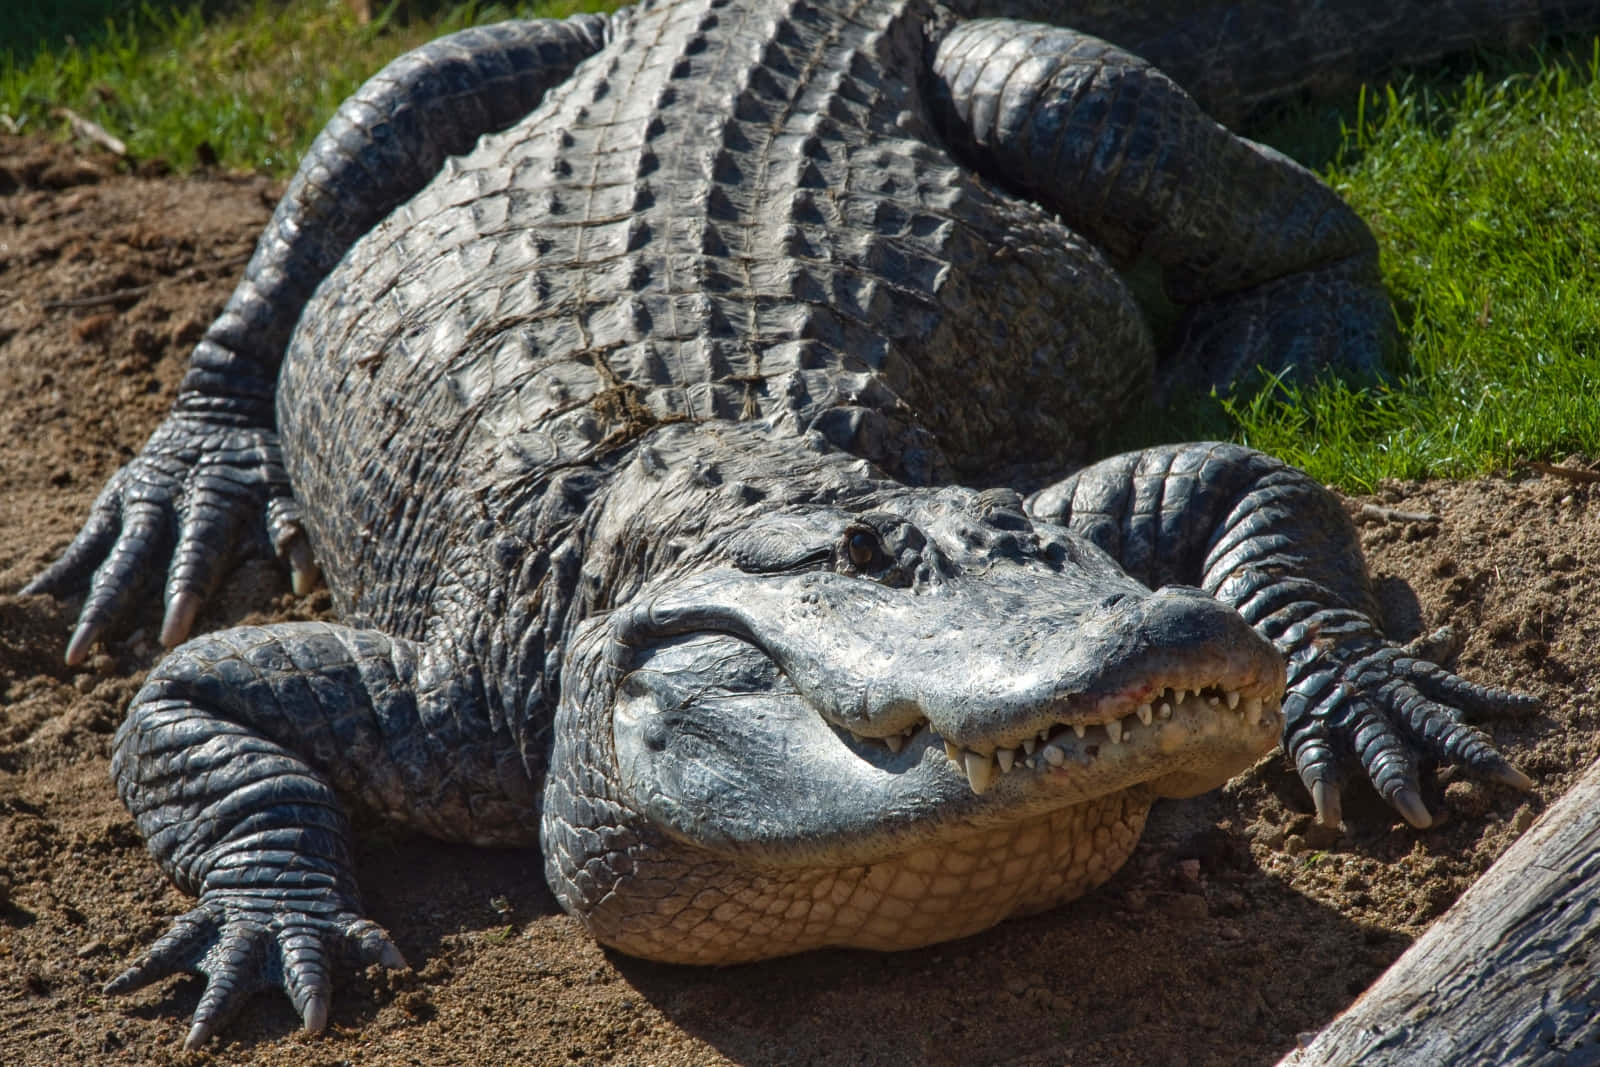 Ennyfiken Alligator Utforskar Sin Naturliga Livsmiljö.